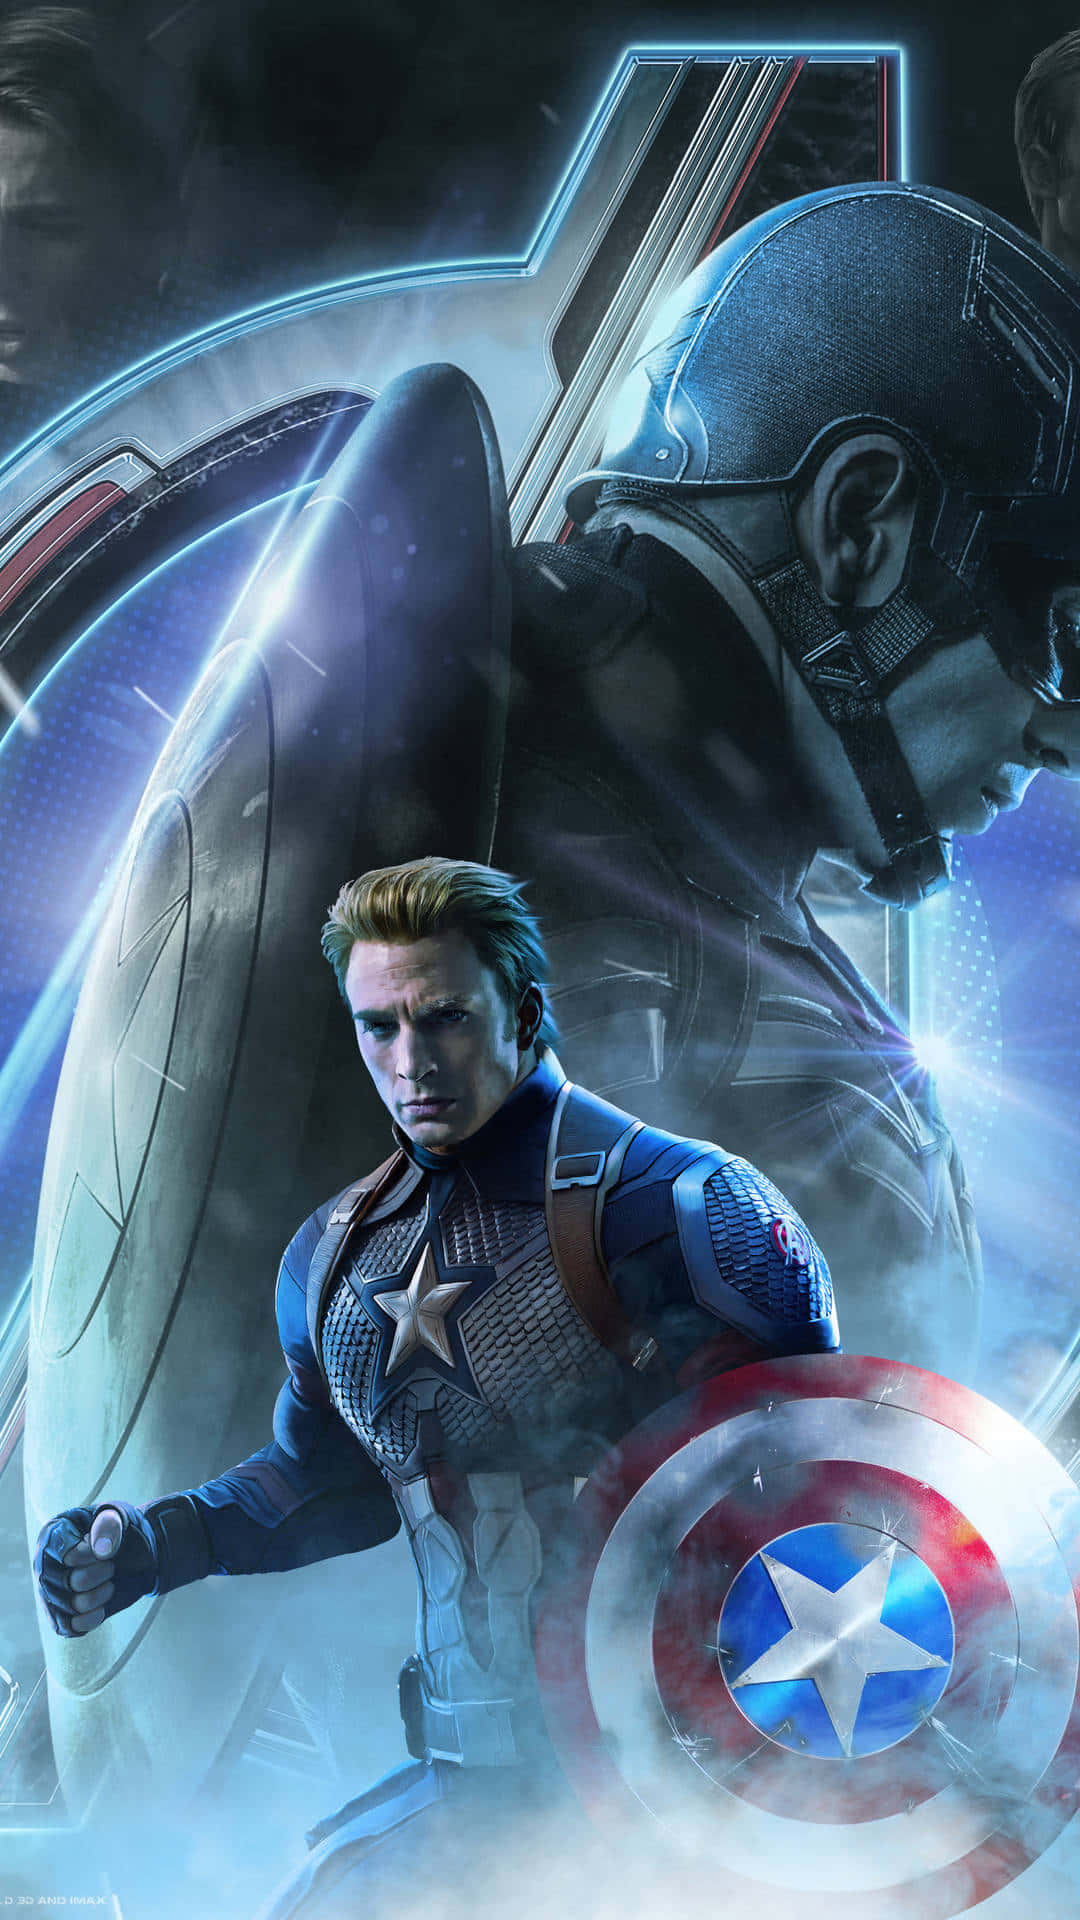 Fondode Pantalla Hd Del Icónico Superhéroe De Marvel, Capitán América.